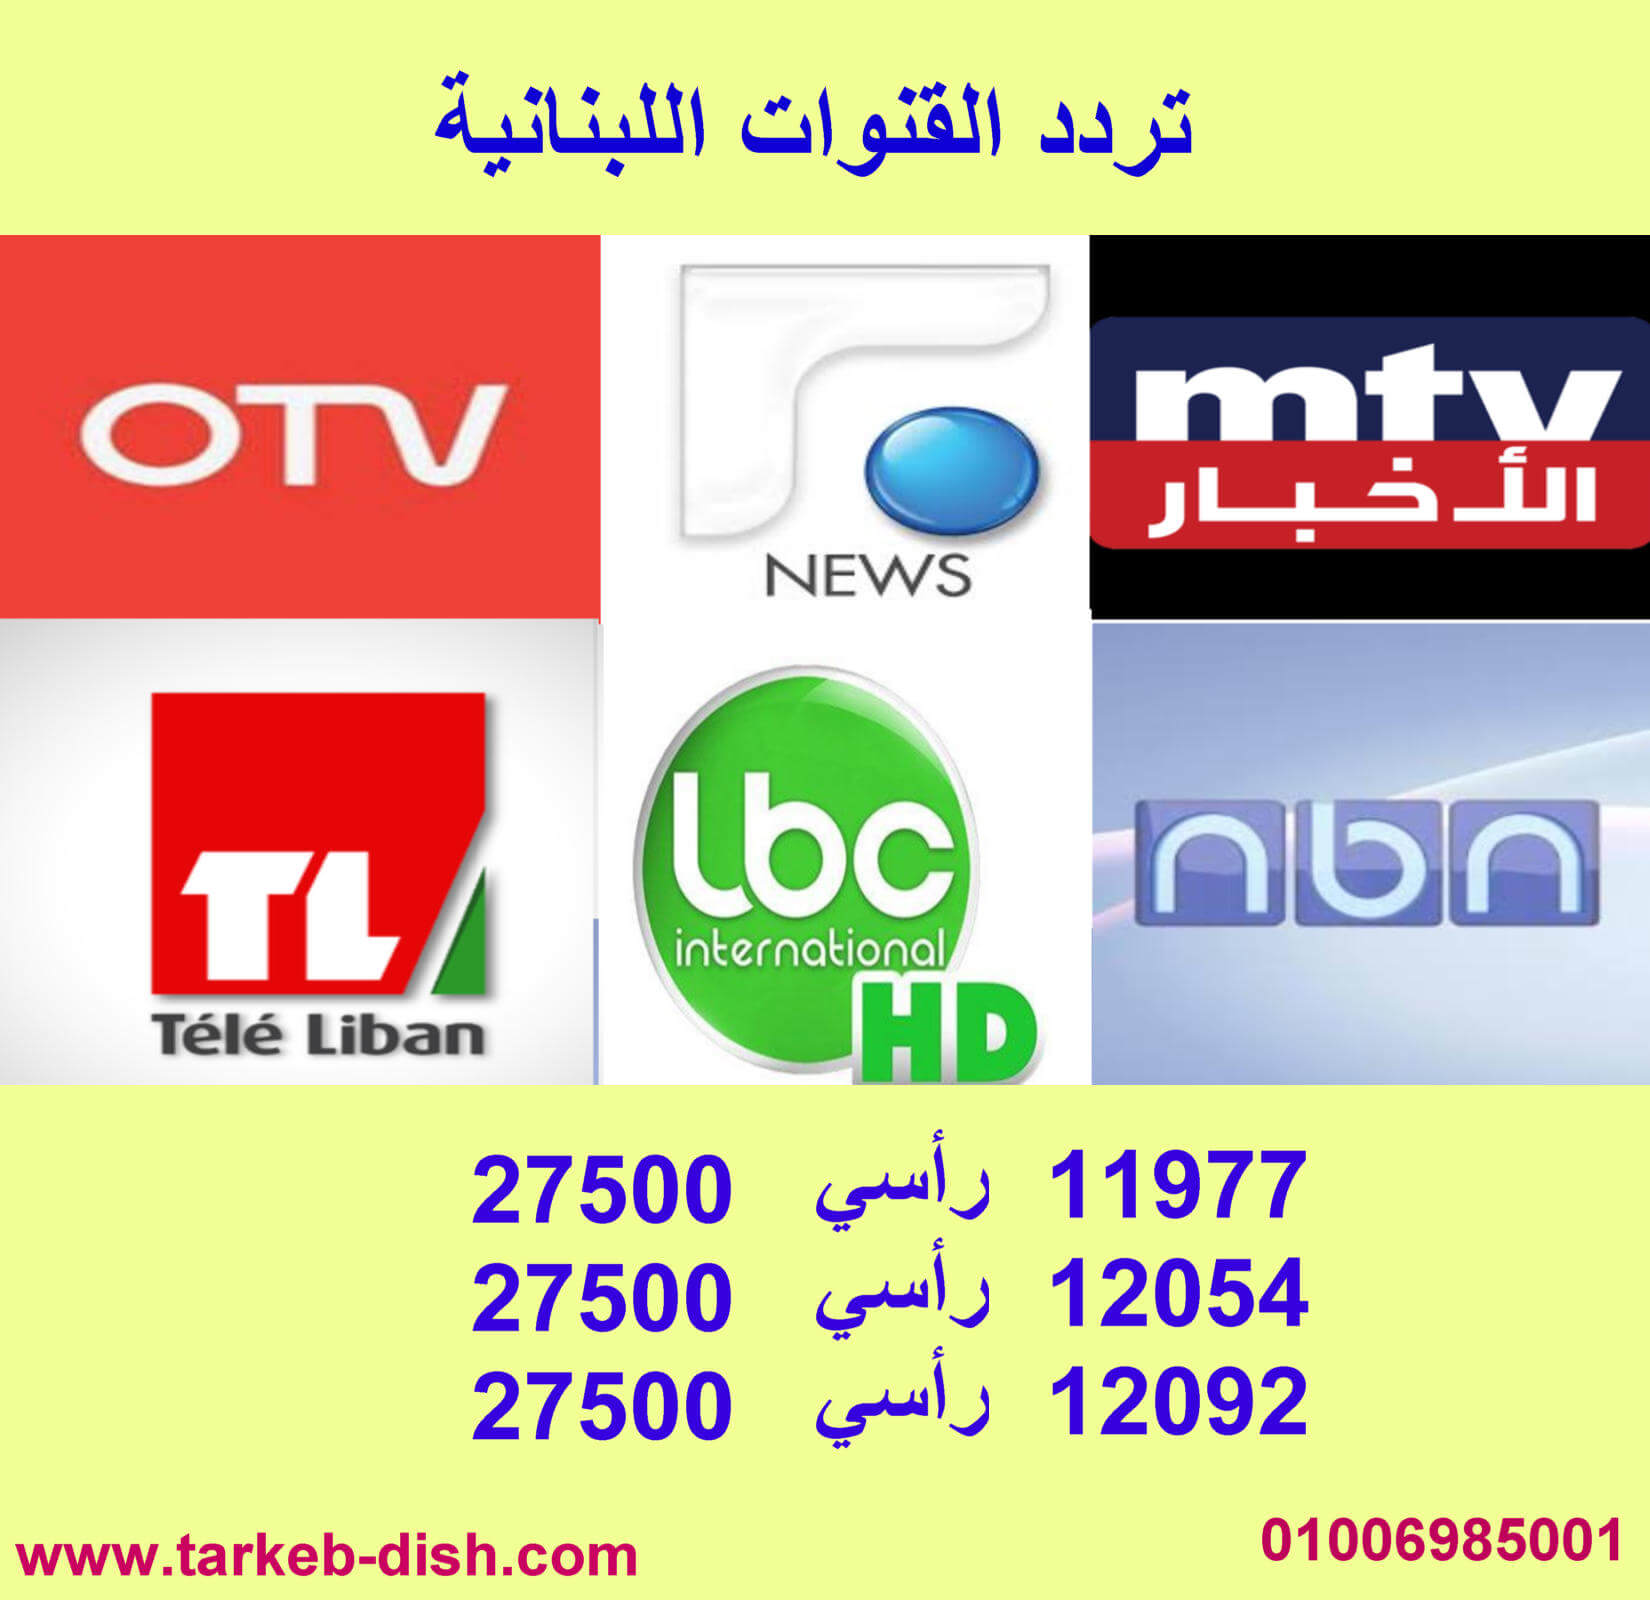 تردد القنوات اللبنانية 2020 الجديد ntv otv المستقبل تلفزيون لبنان